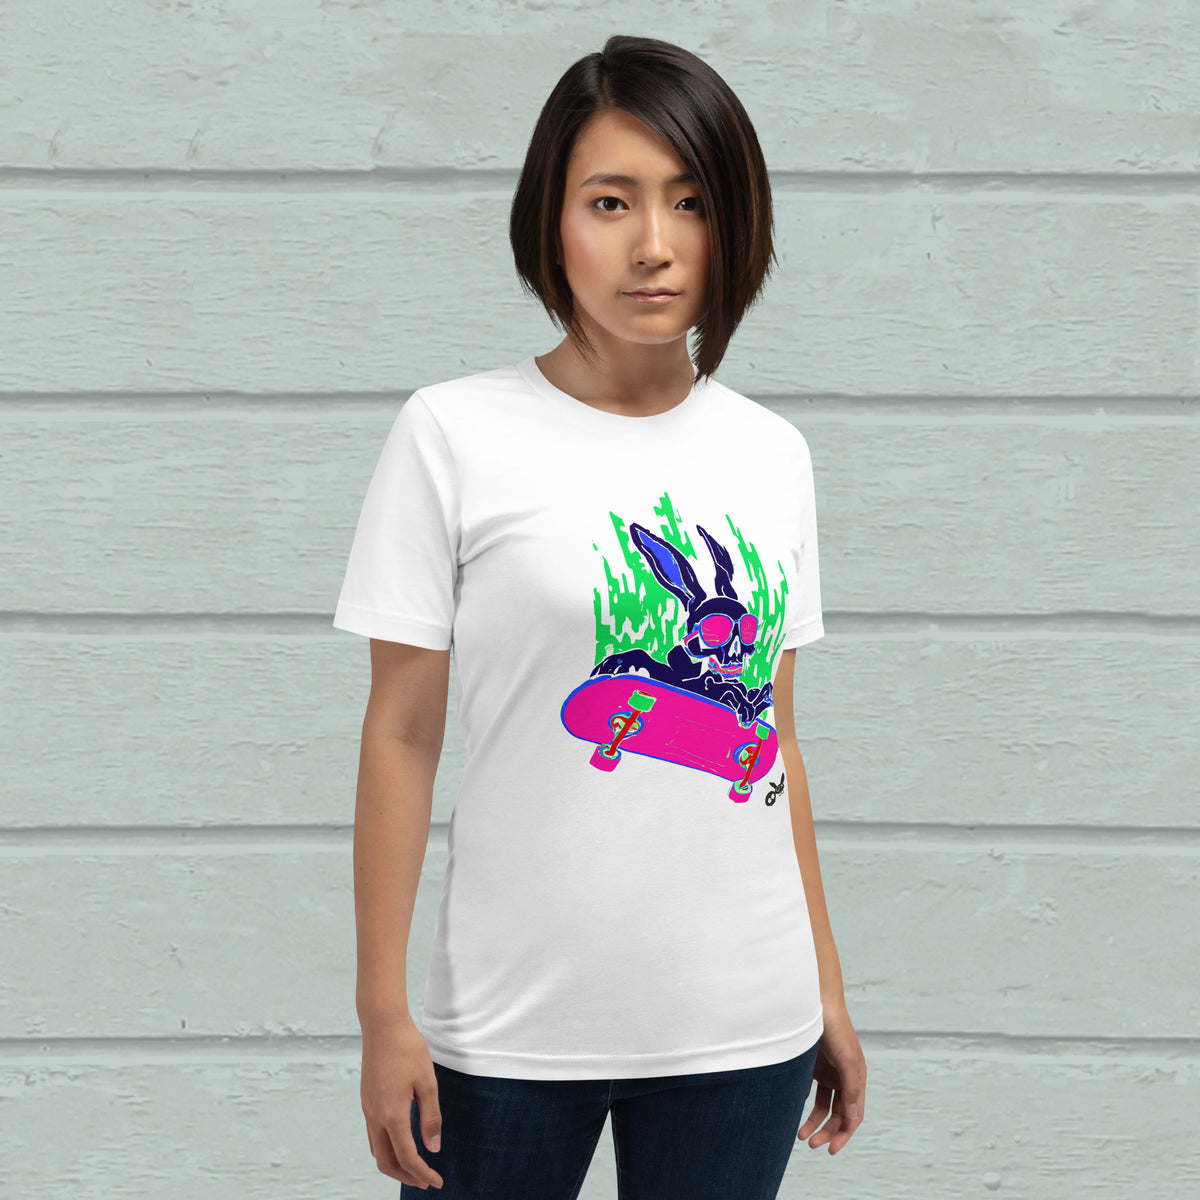 Fire Skater TEE, pink/green